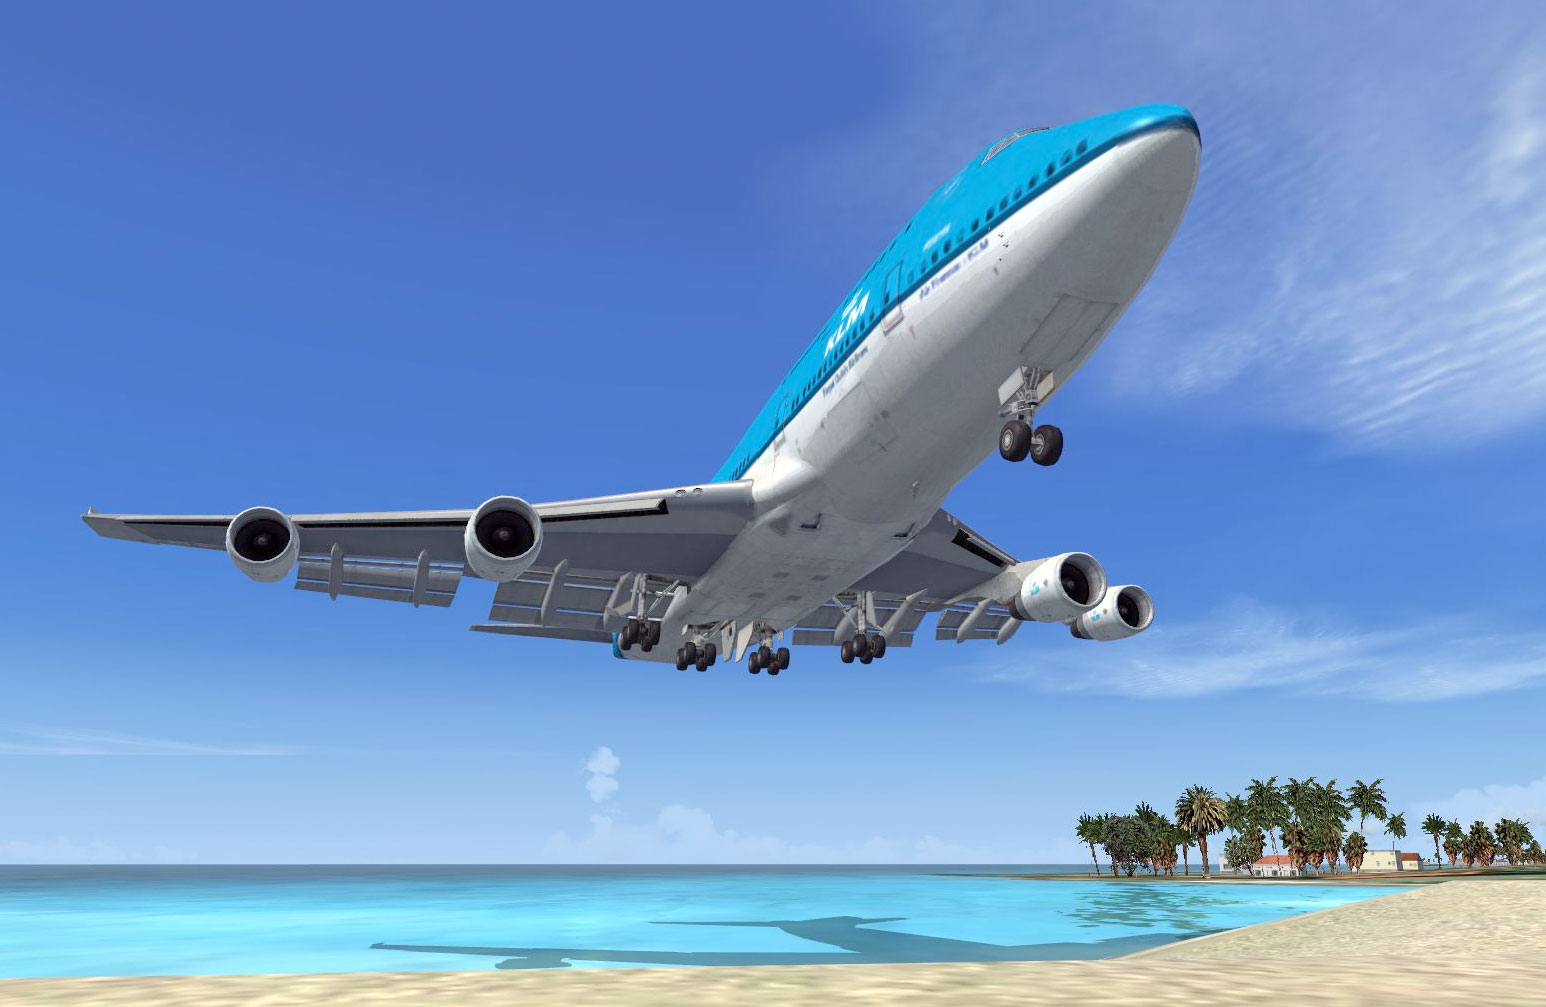 flight simulator games online 747